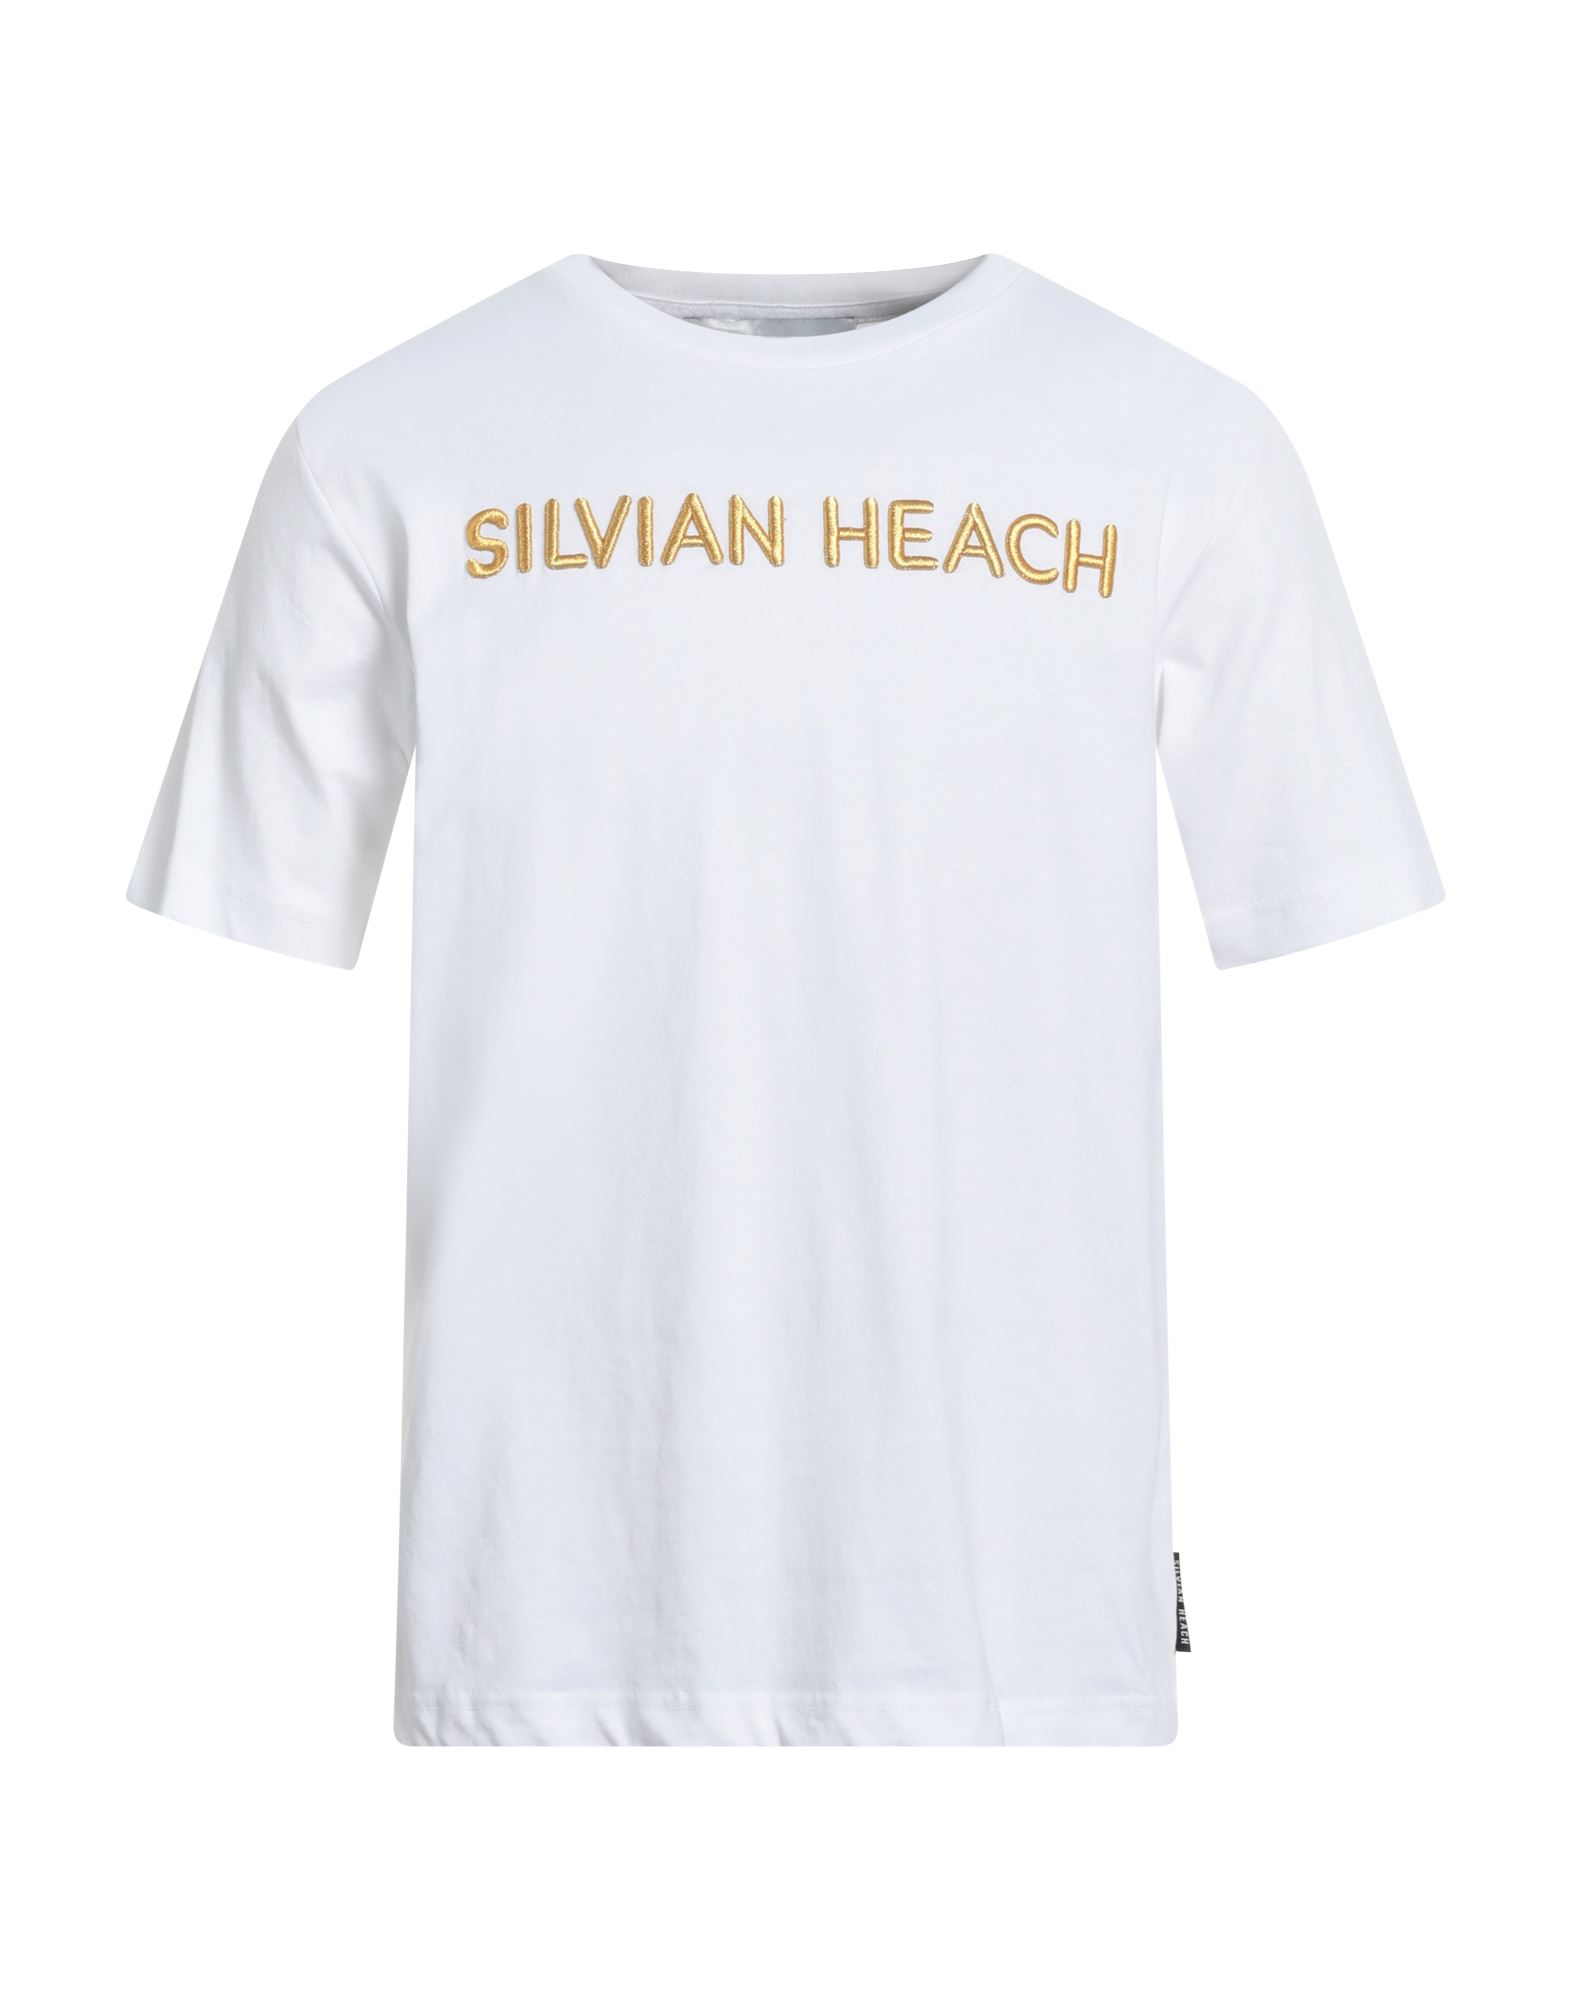 SILVIAN HEACH T-shirts Herren Weiß von SILVIAN HEACH